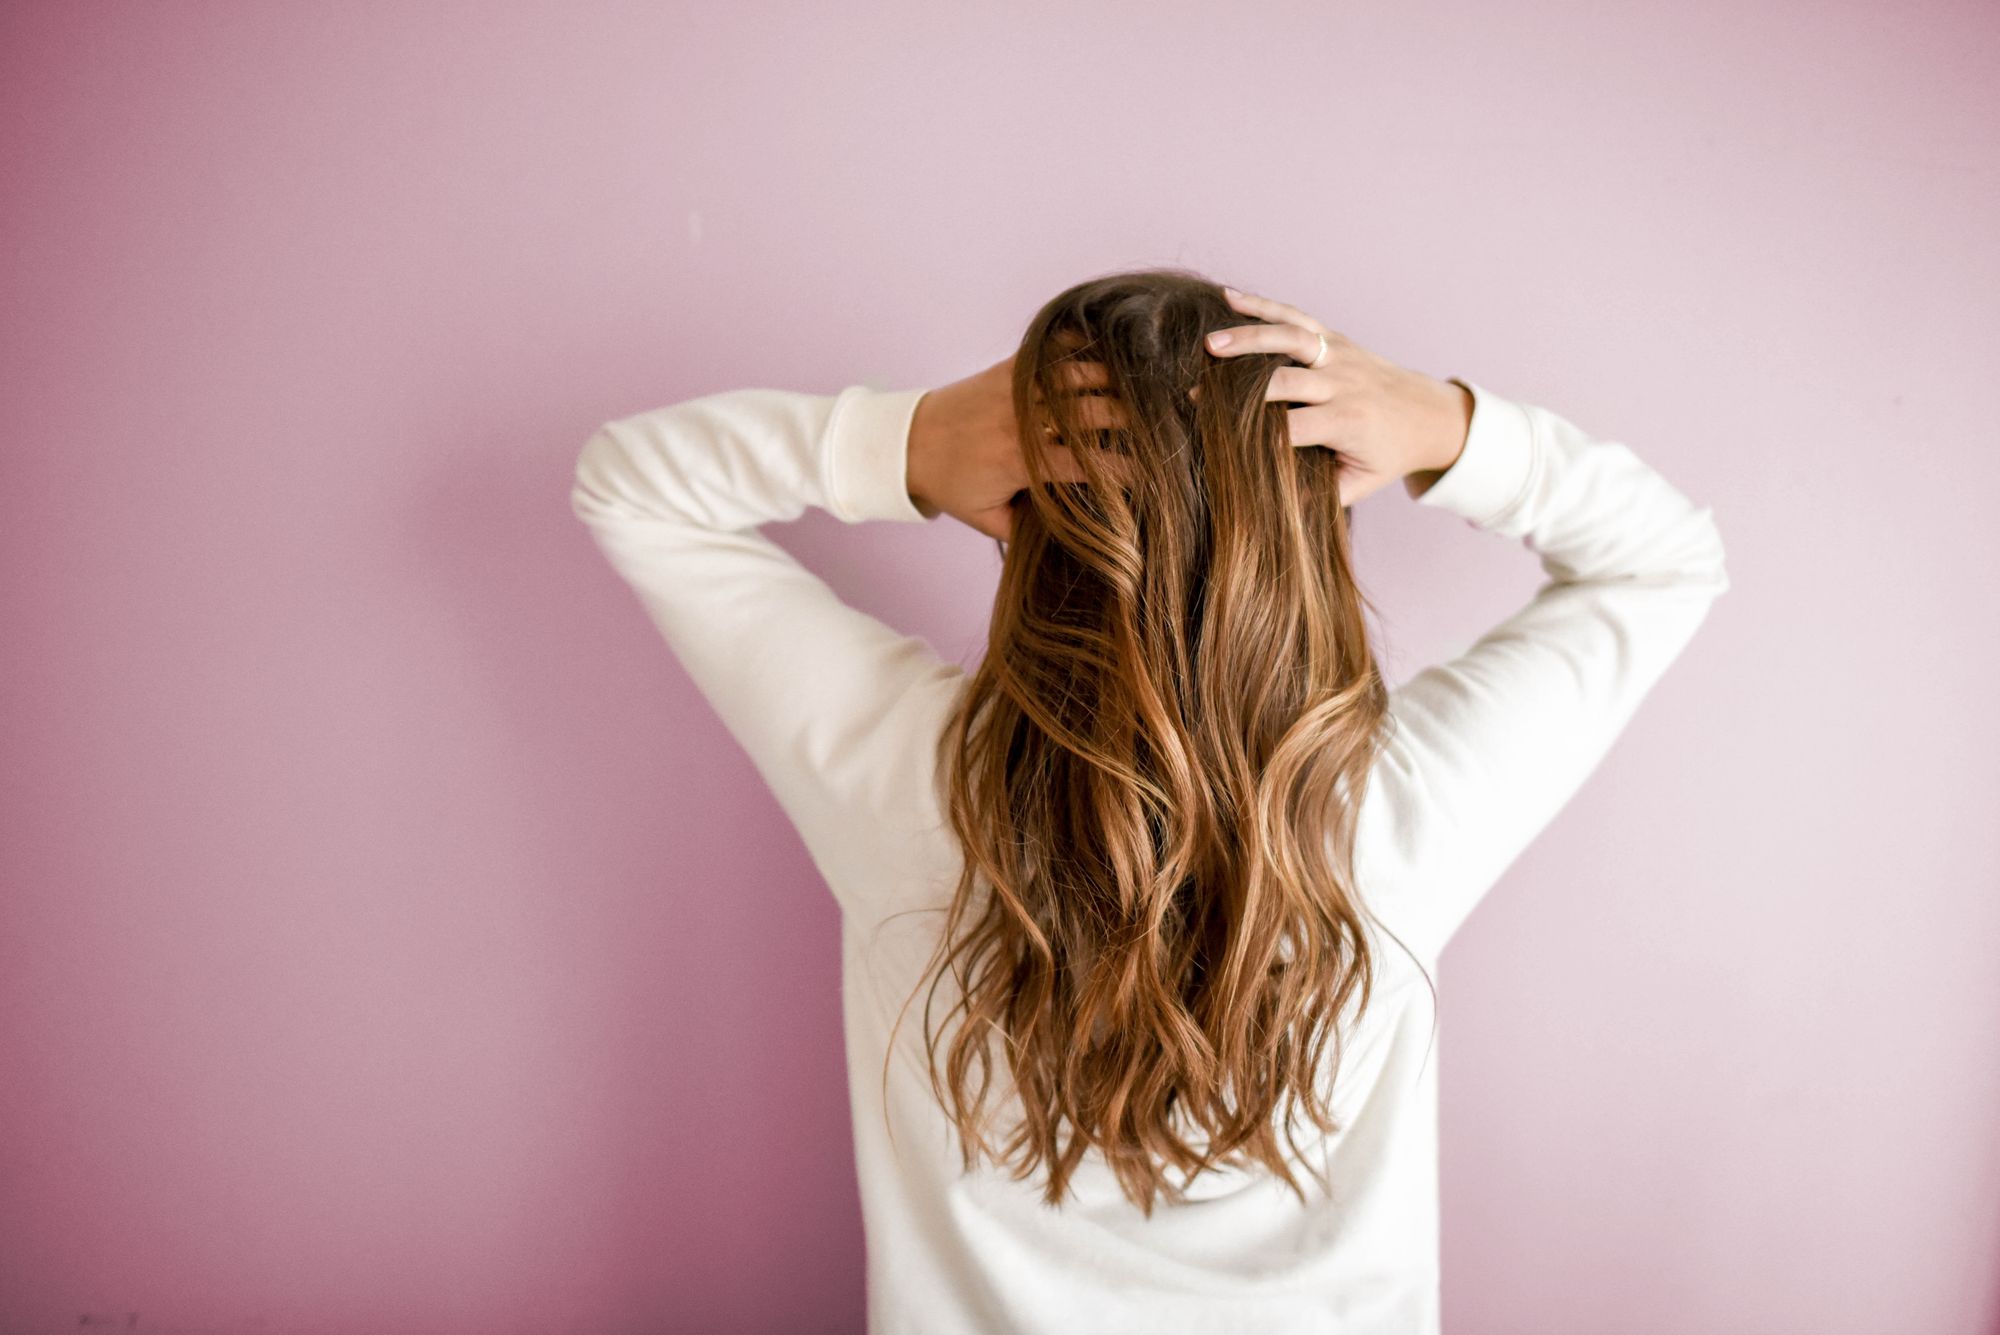 Hair Fall Treatment - Natural Remedies For Hair Loss